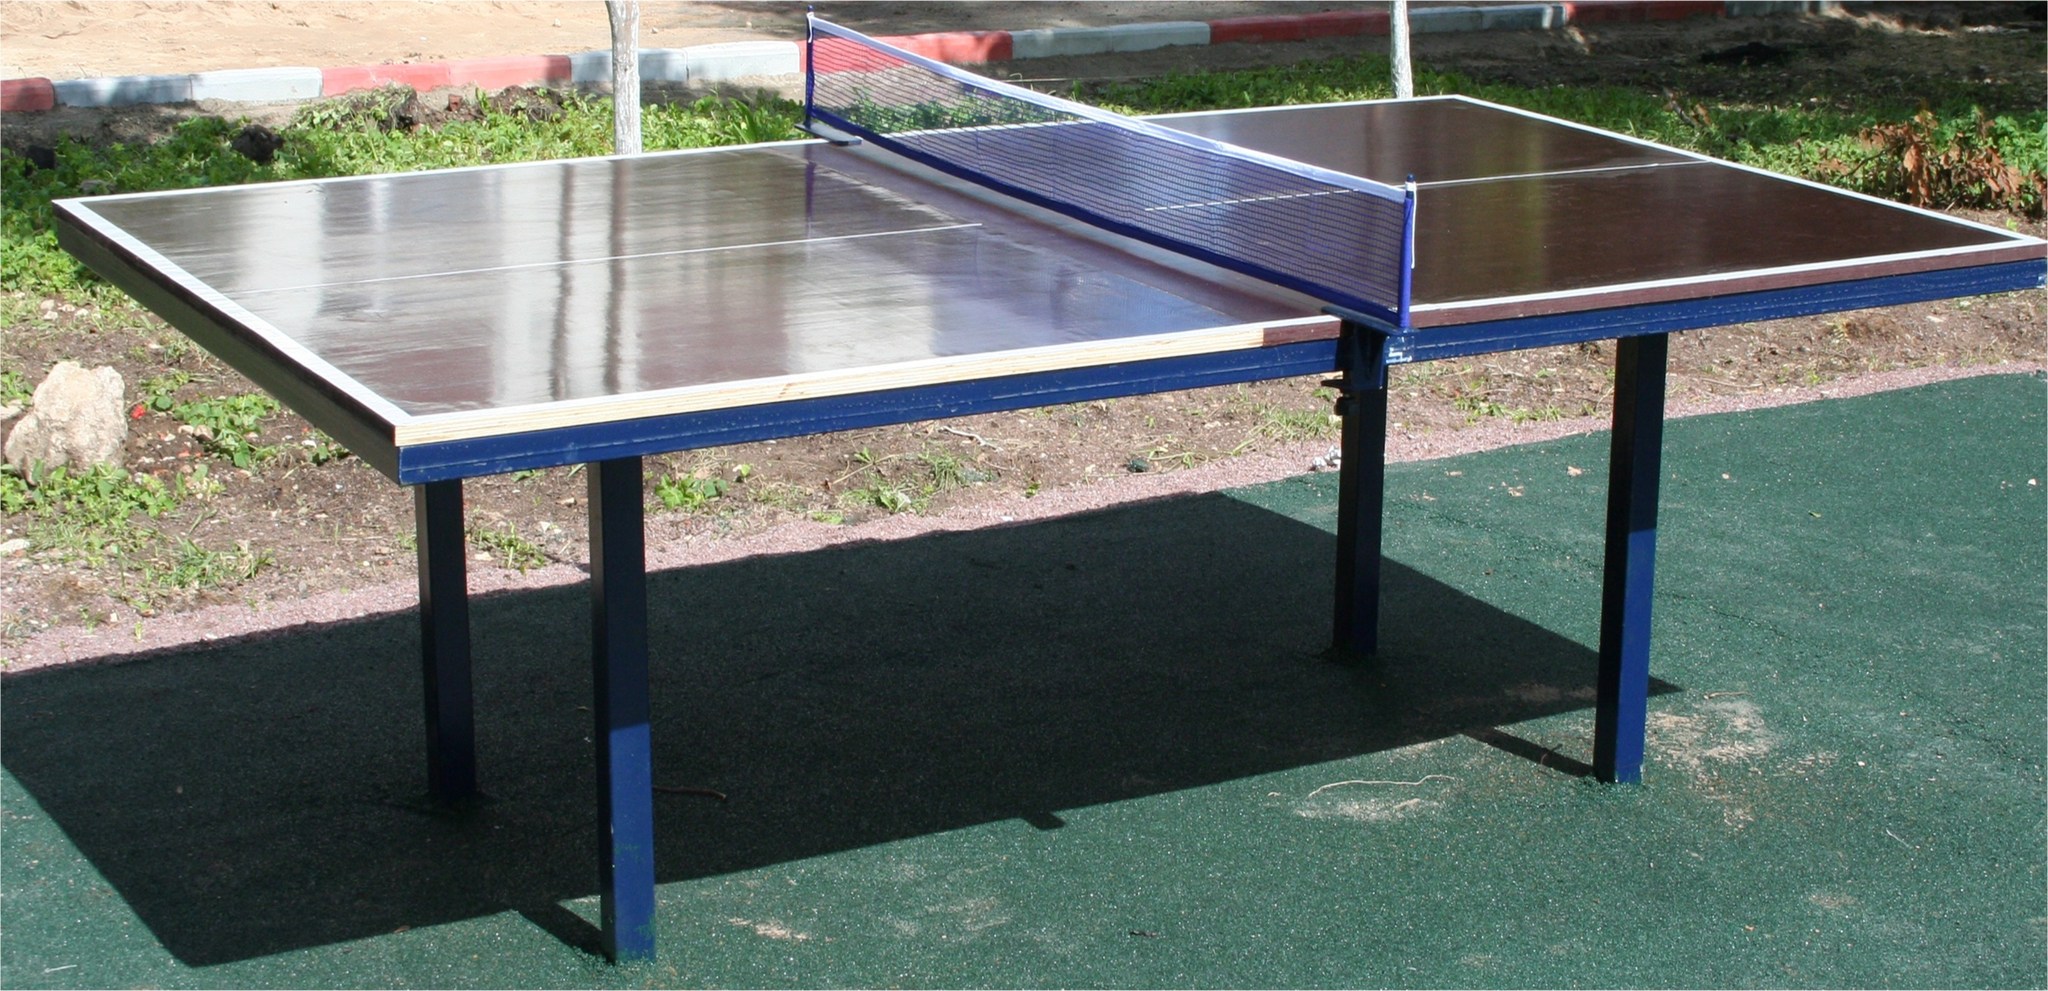 габаритные размеры стола для настольного тенниса